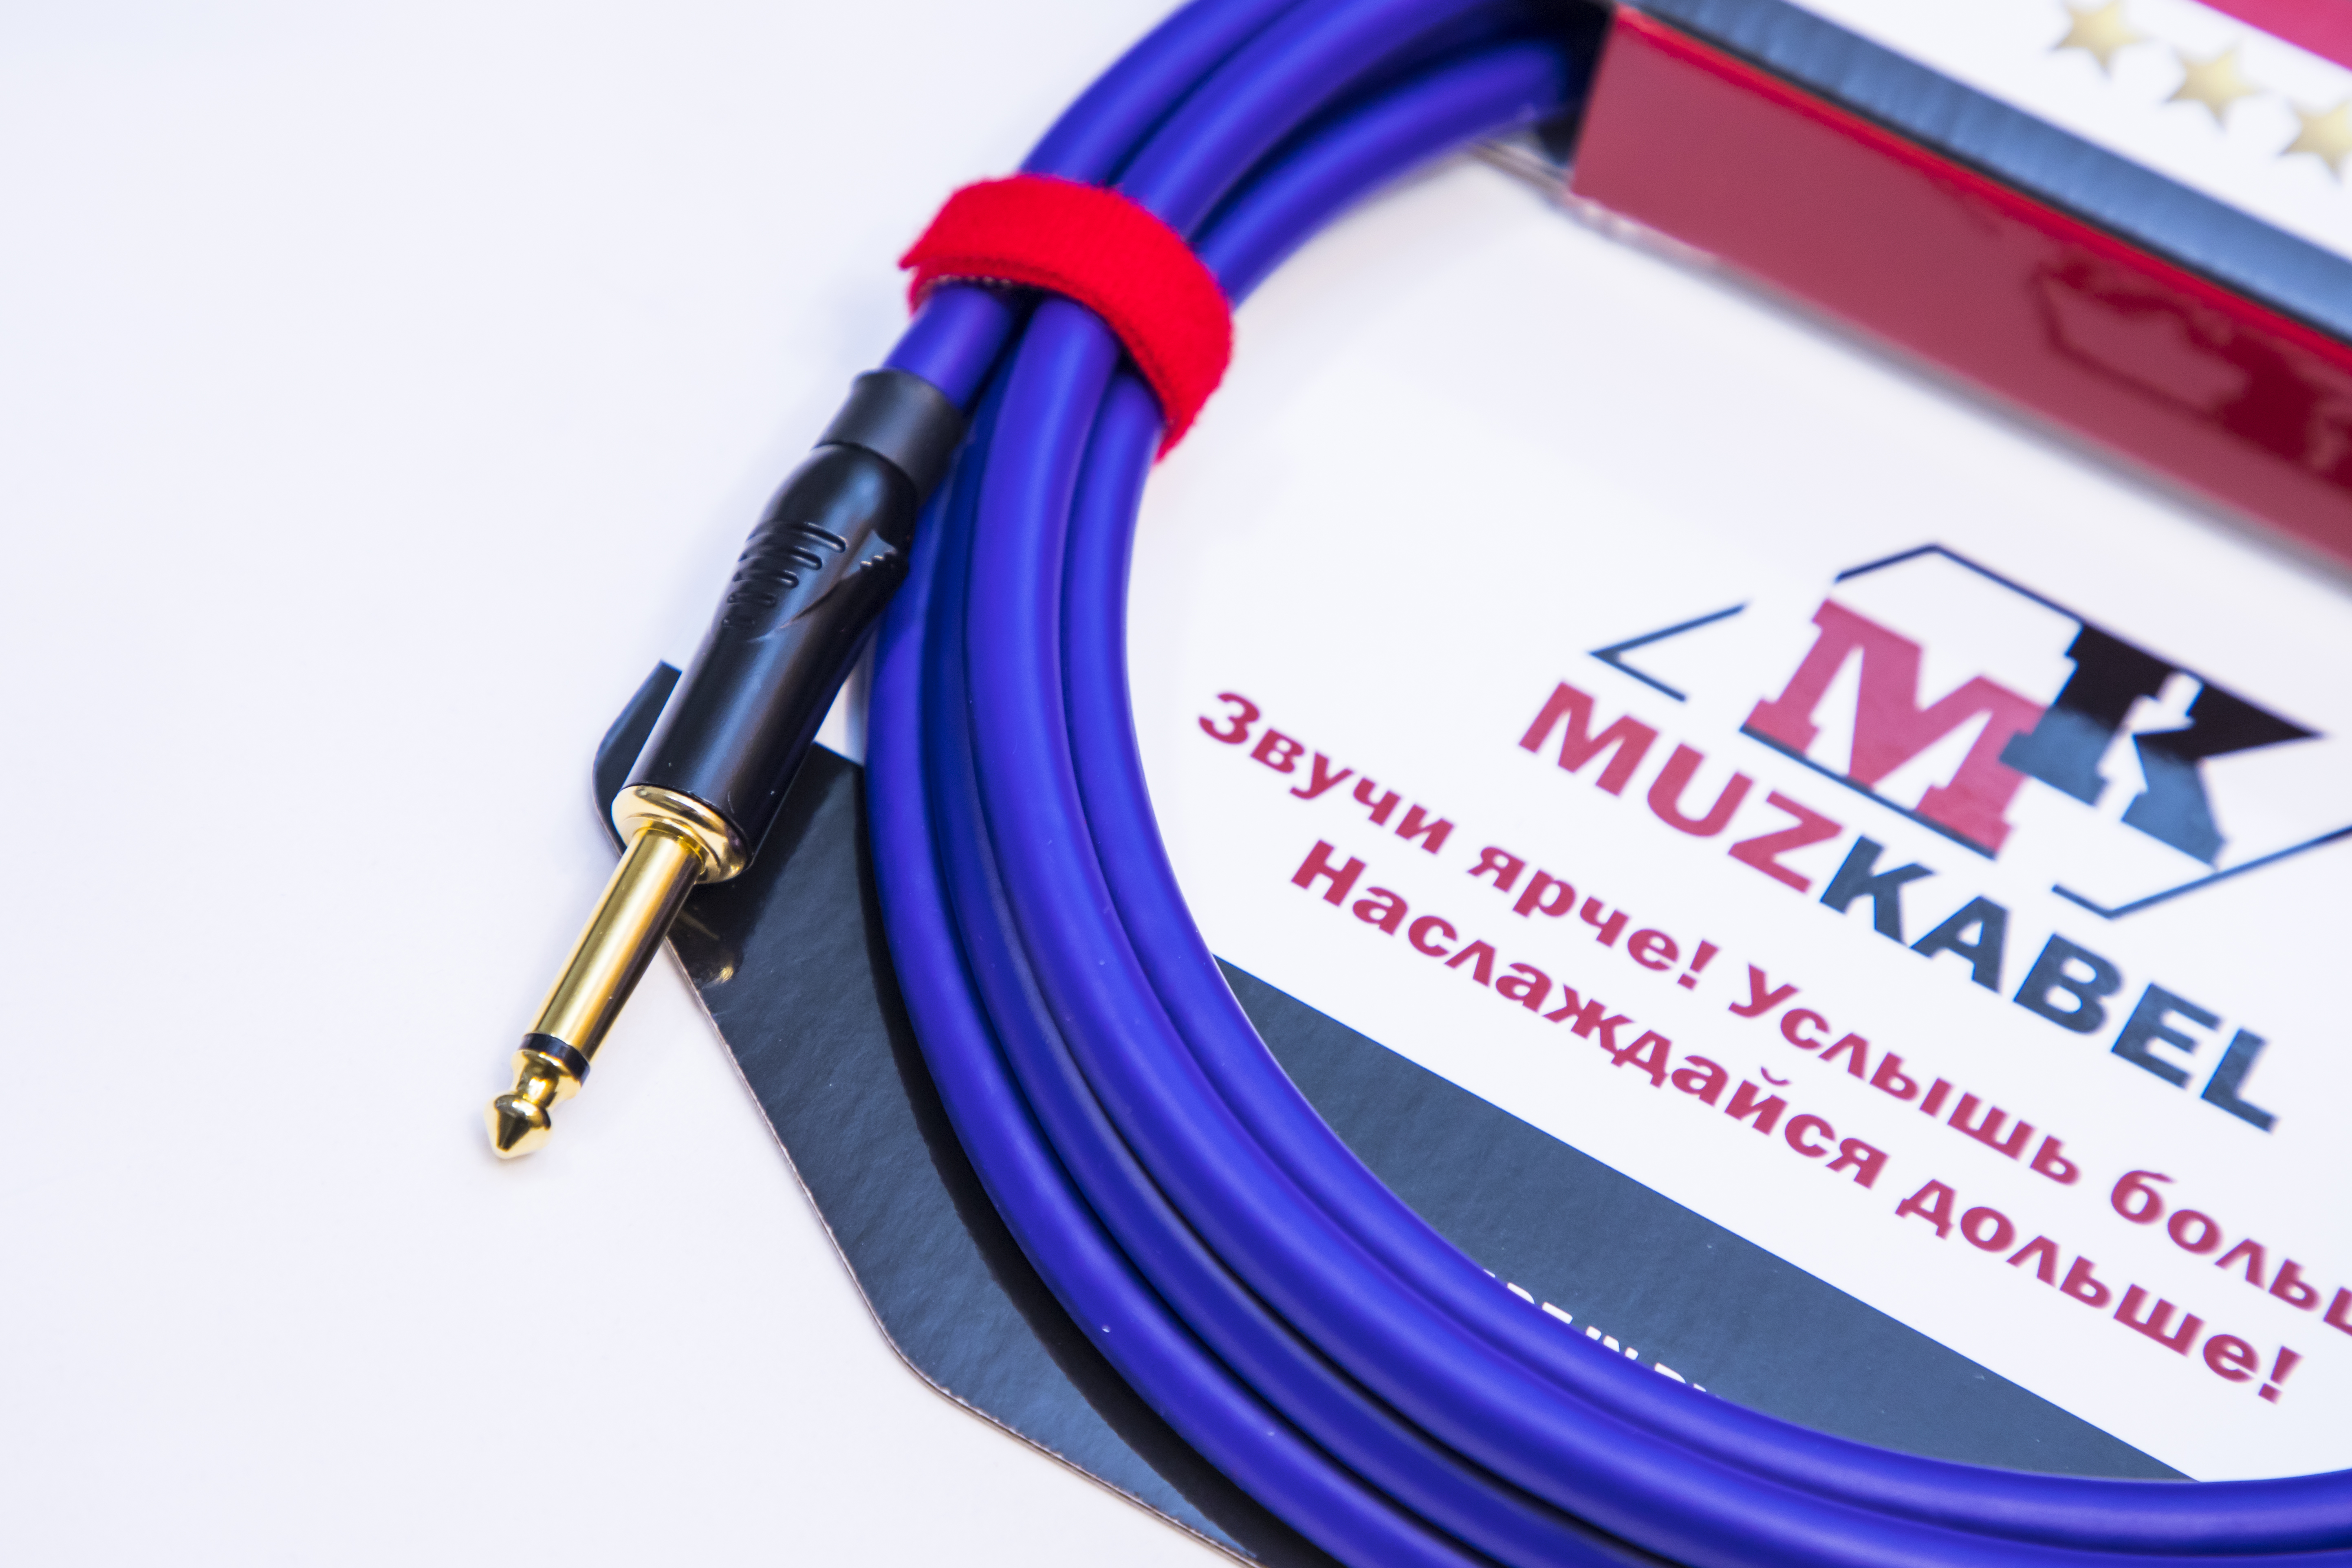 Гитарный кабель MUZKABEL JFNIK4V - 8 метров, JACK (моно) - JACK (моно)